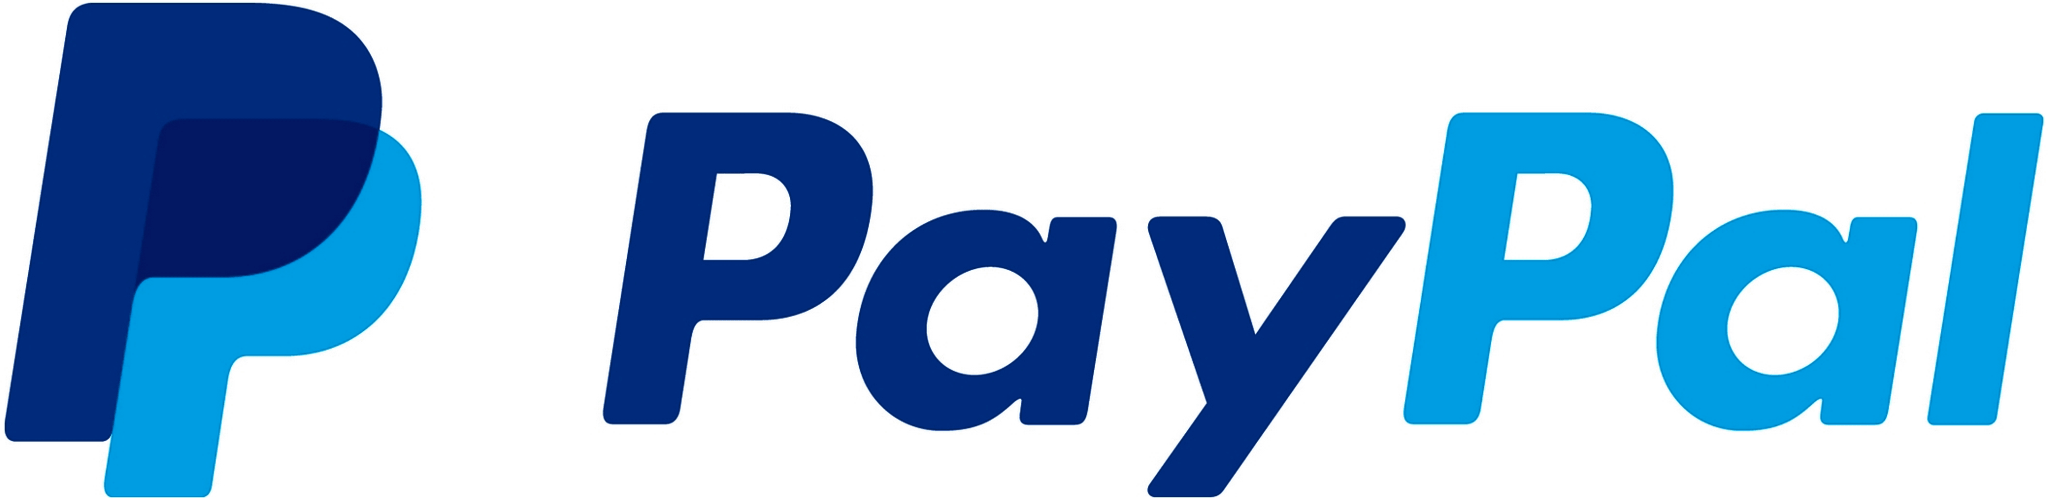 PayPal Zahlungsdaten an Buchhaltung